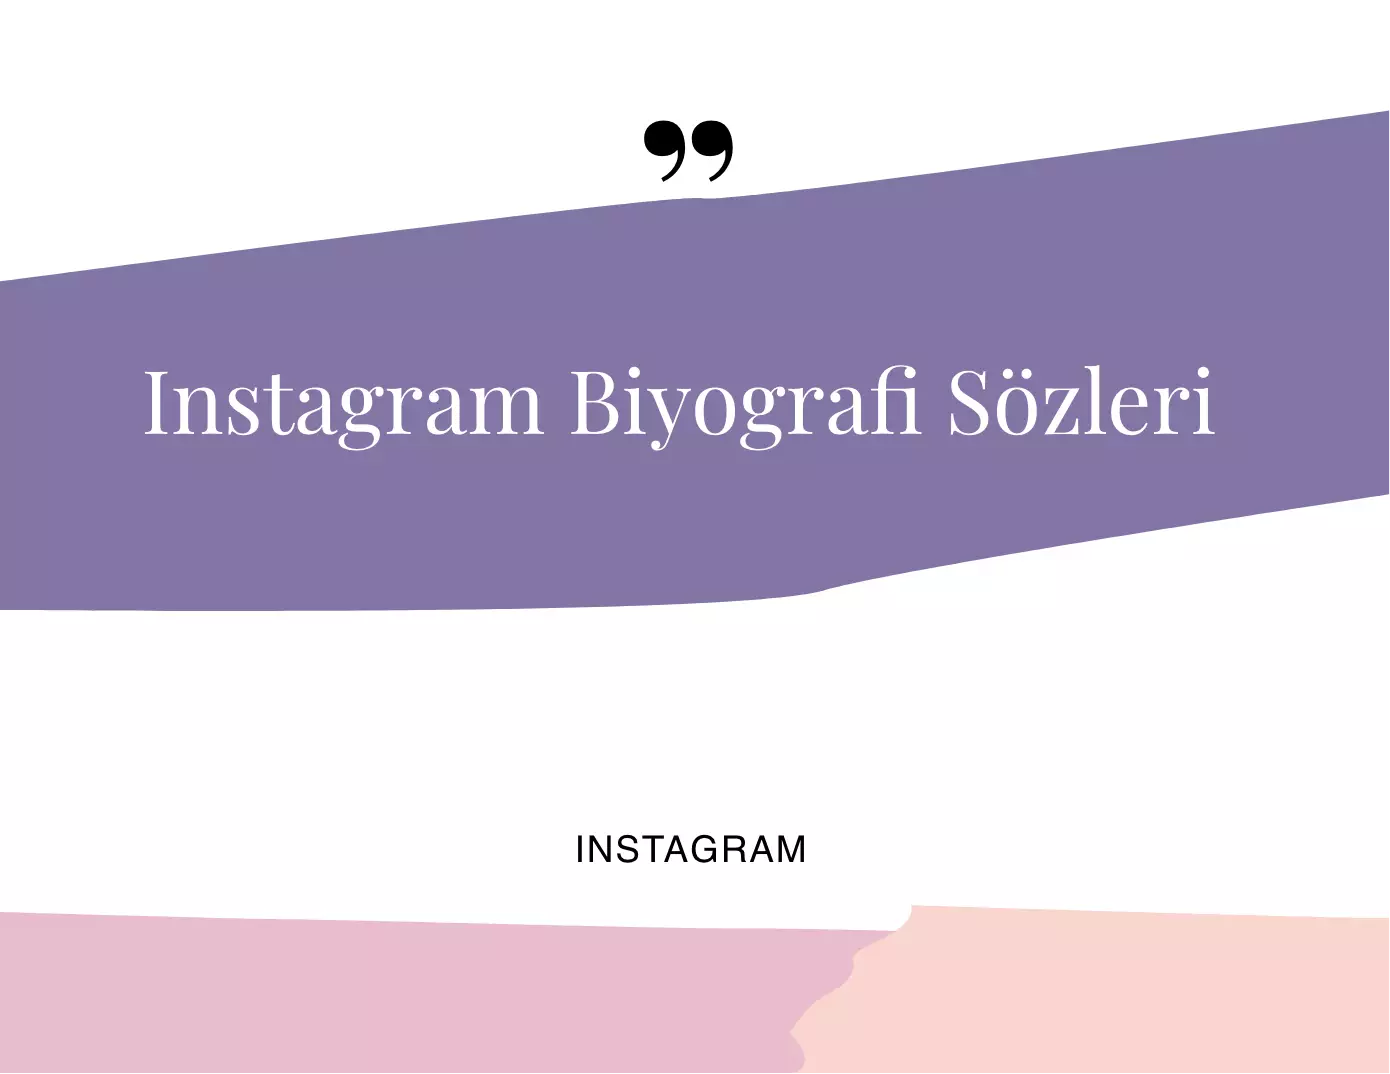 Instagram Biyografi Sözleri